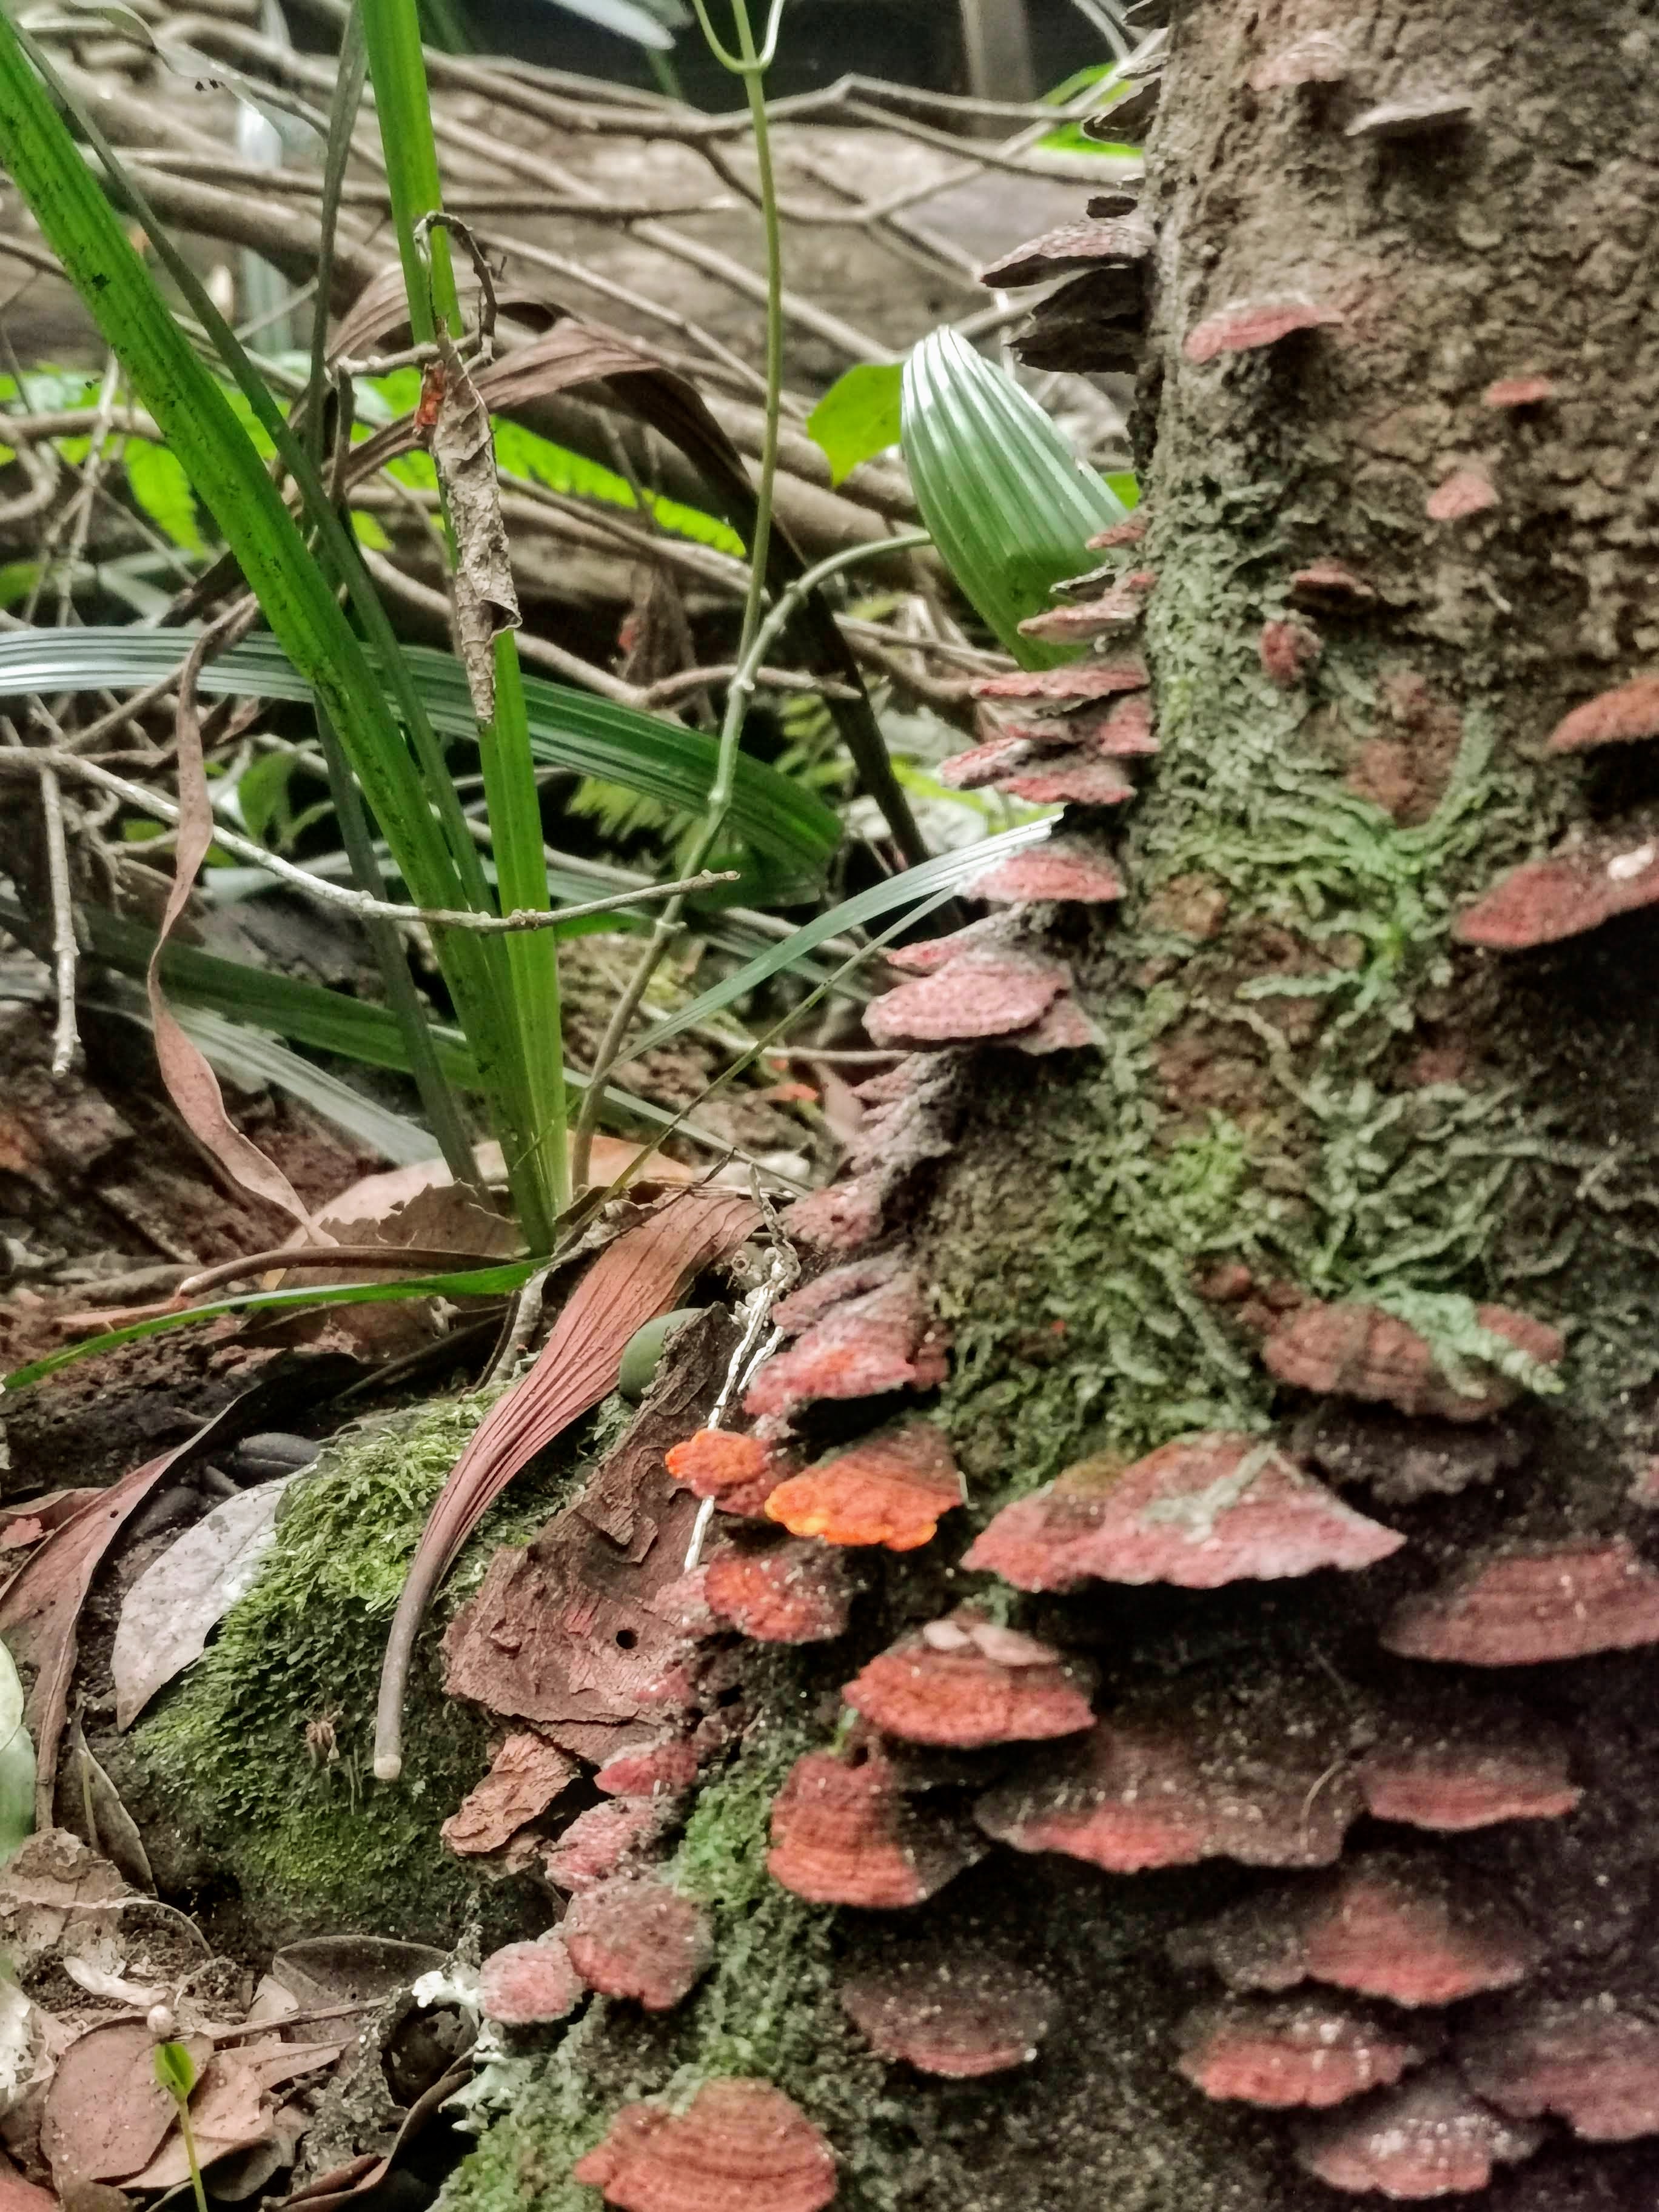 Reddish-brown bracket fungi